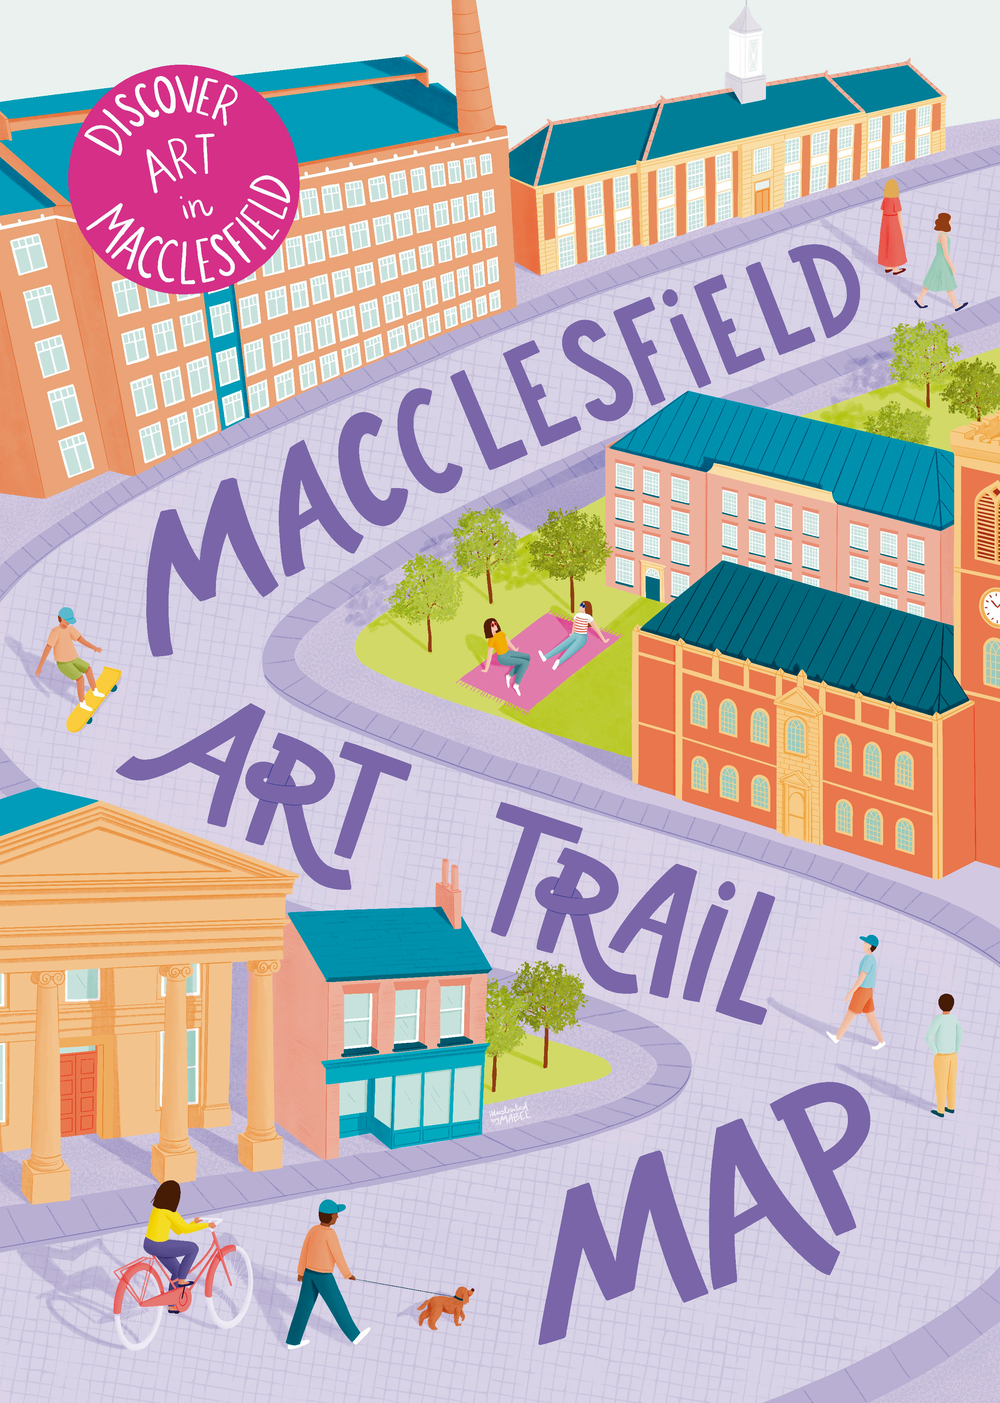 Macclesfield art trail map